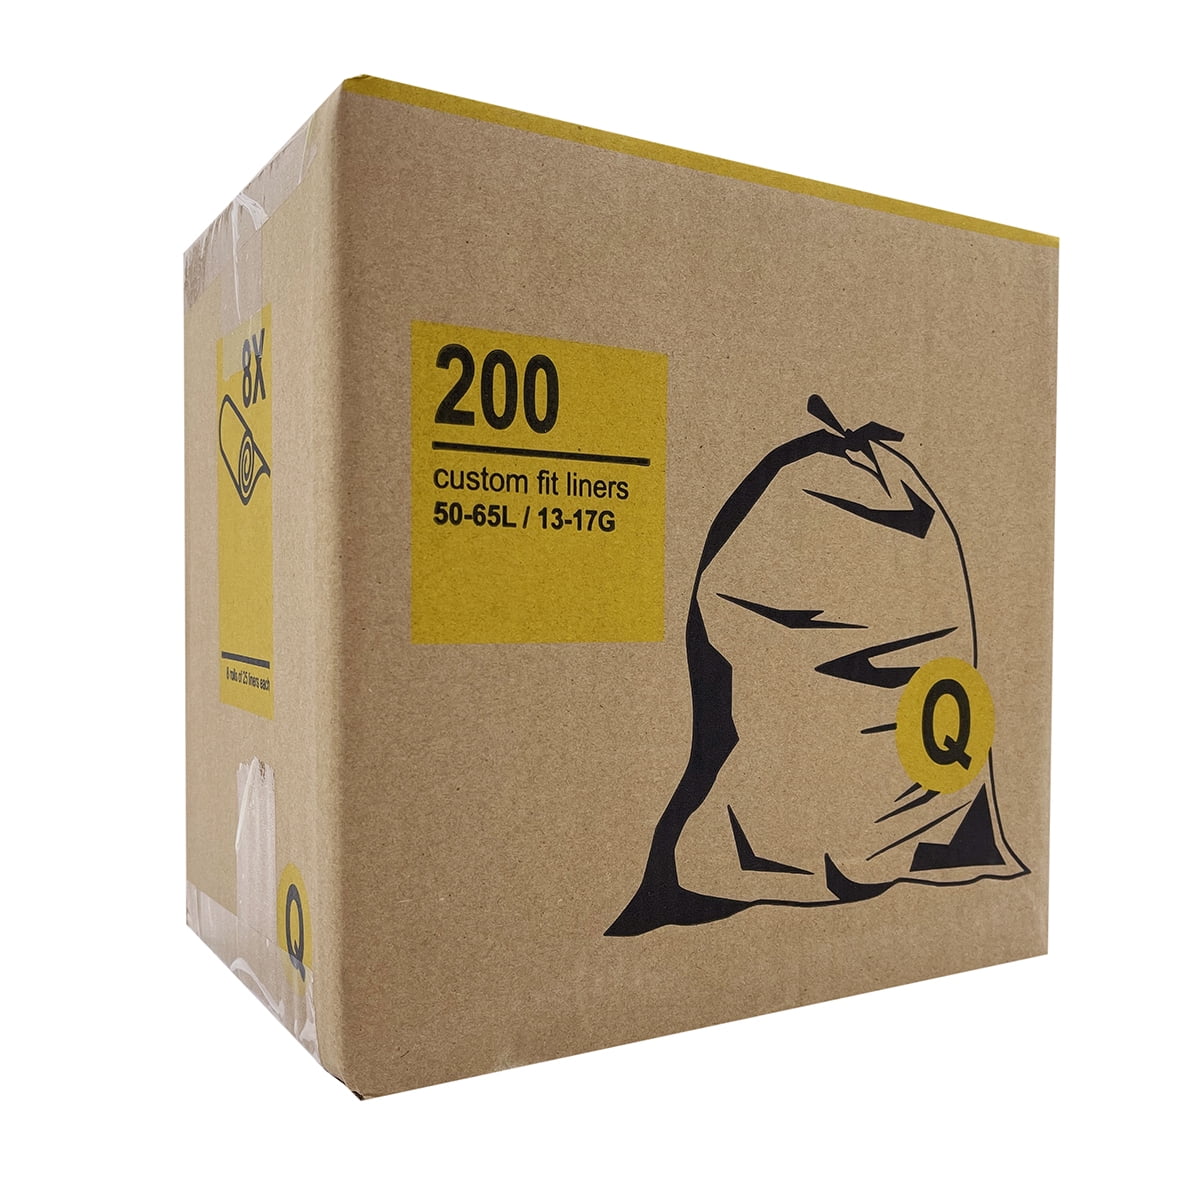 simplehuman Code K Custom Fit Drawstring Trash Bags in Dispenser Packs, 60  Count, 35-45 Liter / 9.3-12 Gallon, White 